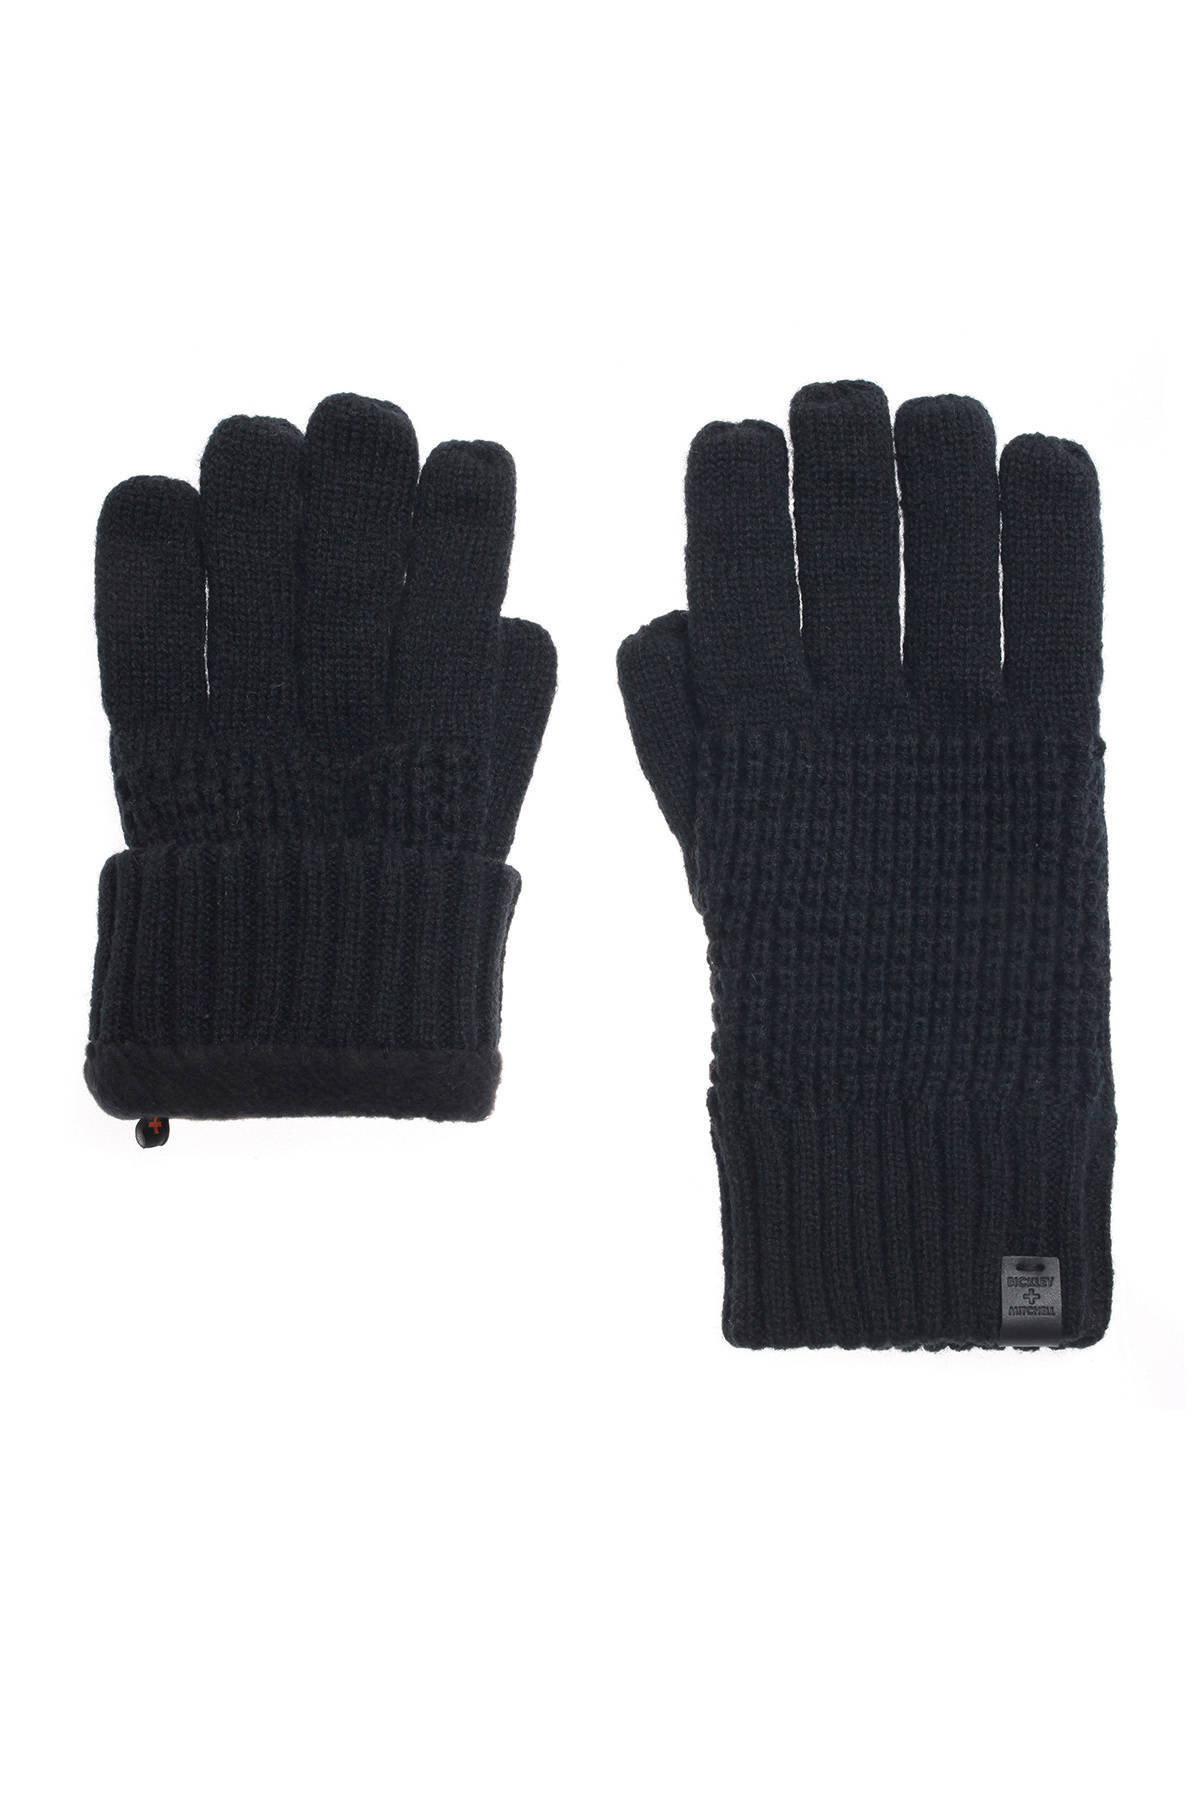 zwart grijs grijs bruin Heren merino wollen handschoenen Accessoires Handschoenen & wanten Winterhandschoenen kleur naar keuze marineblauw 